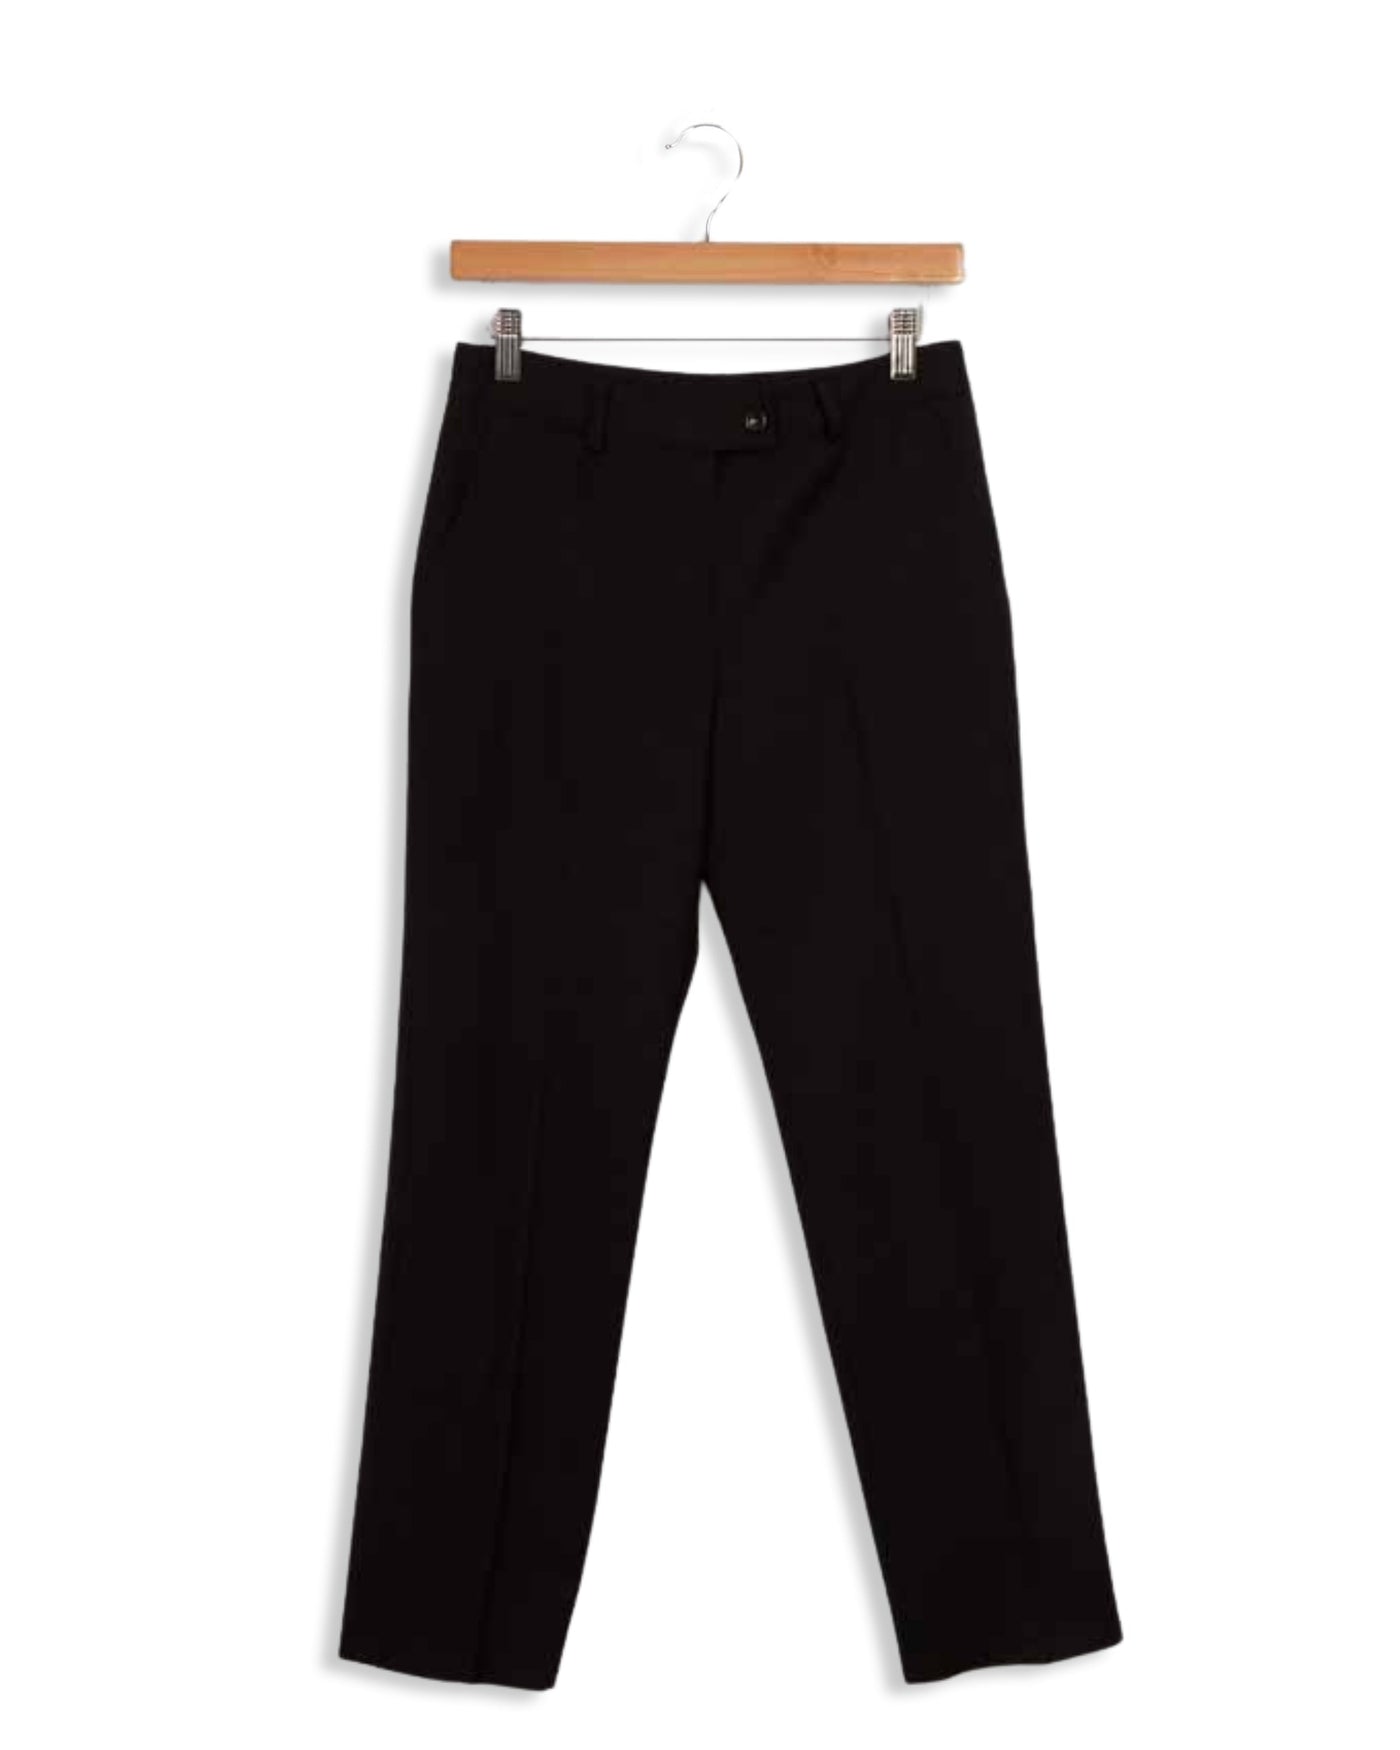 Pantalon noir - 36